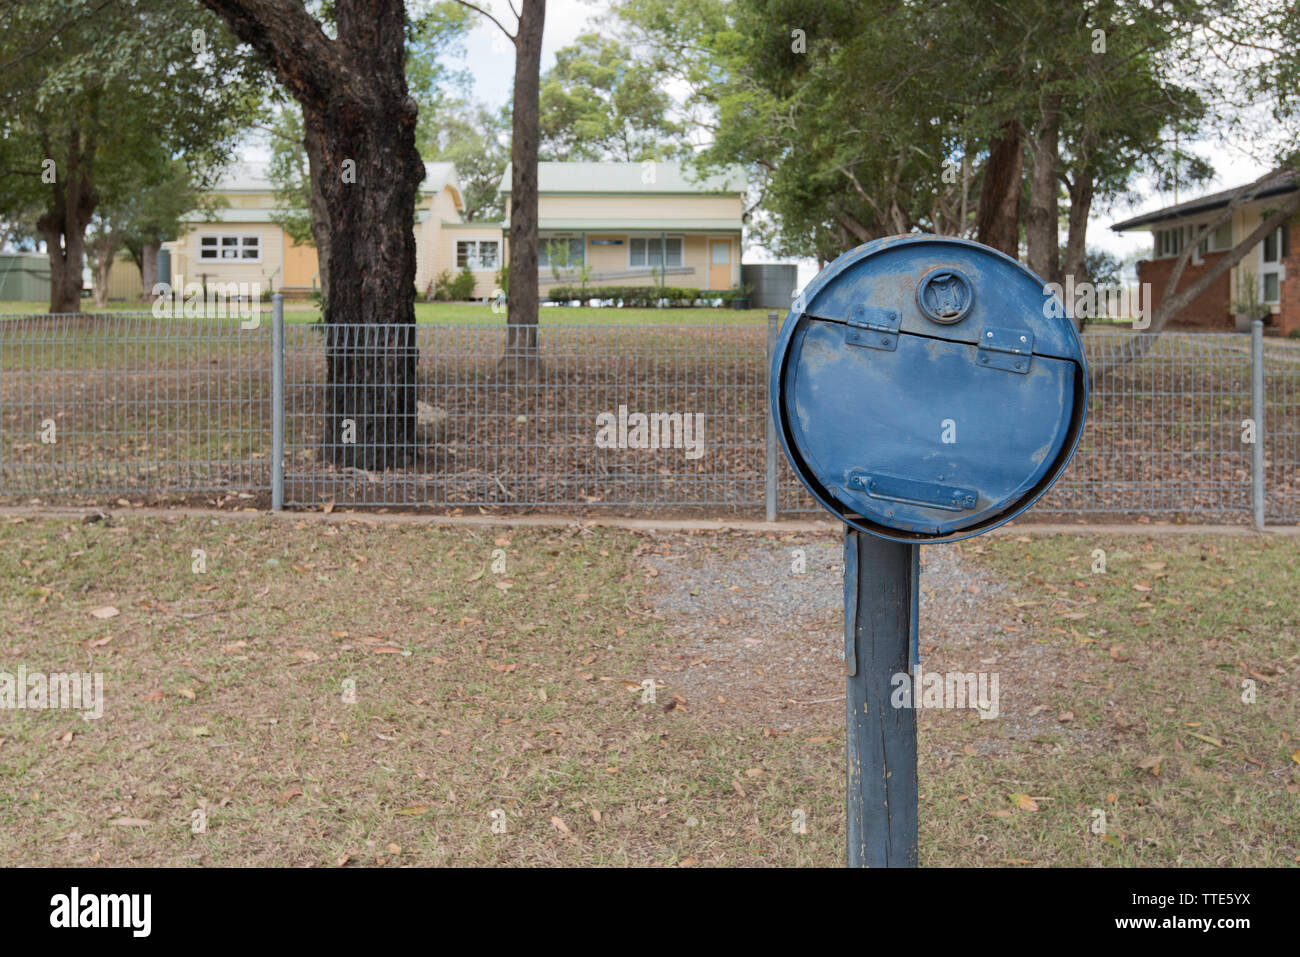 Der Briefkasten außerhalb Krambach (Pop 2016: 378) Öffentliche Grundschule landeinwärts von der Mitte der Nordküste von New South Wales, Australien Stockfoto